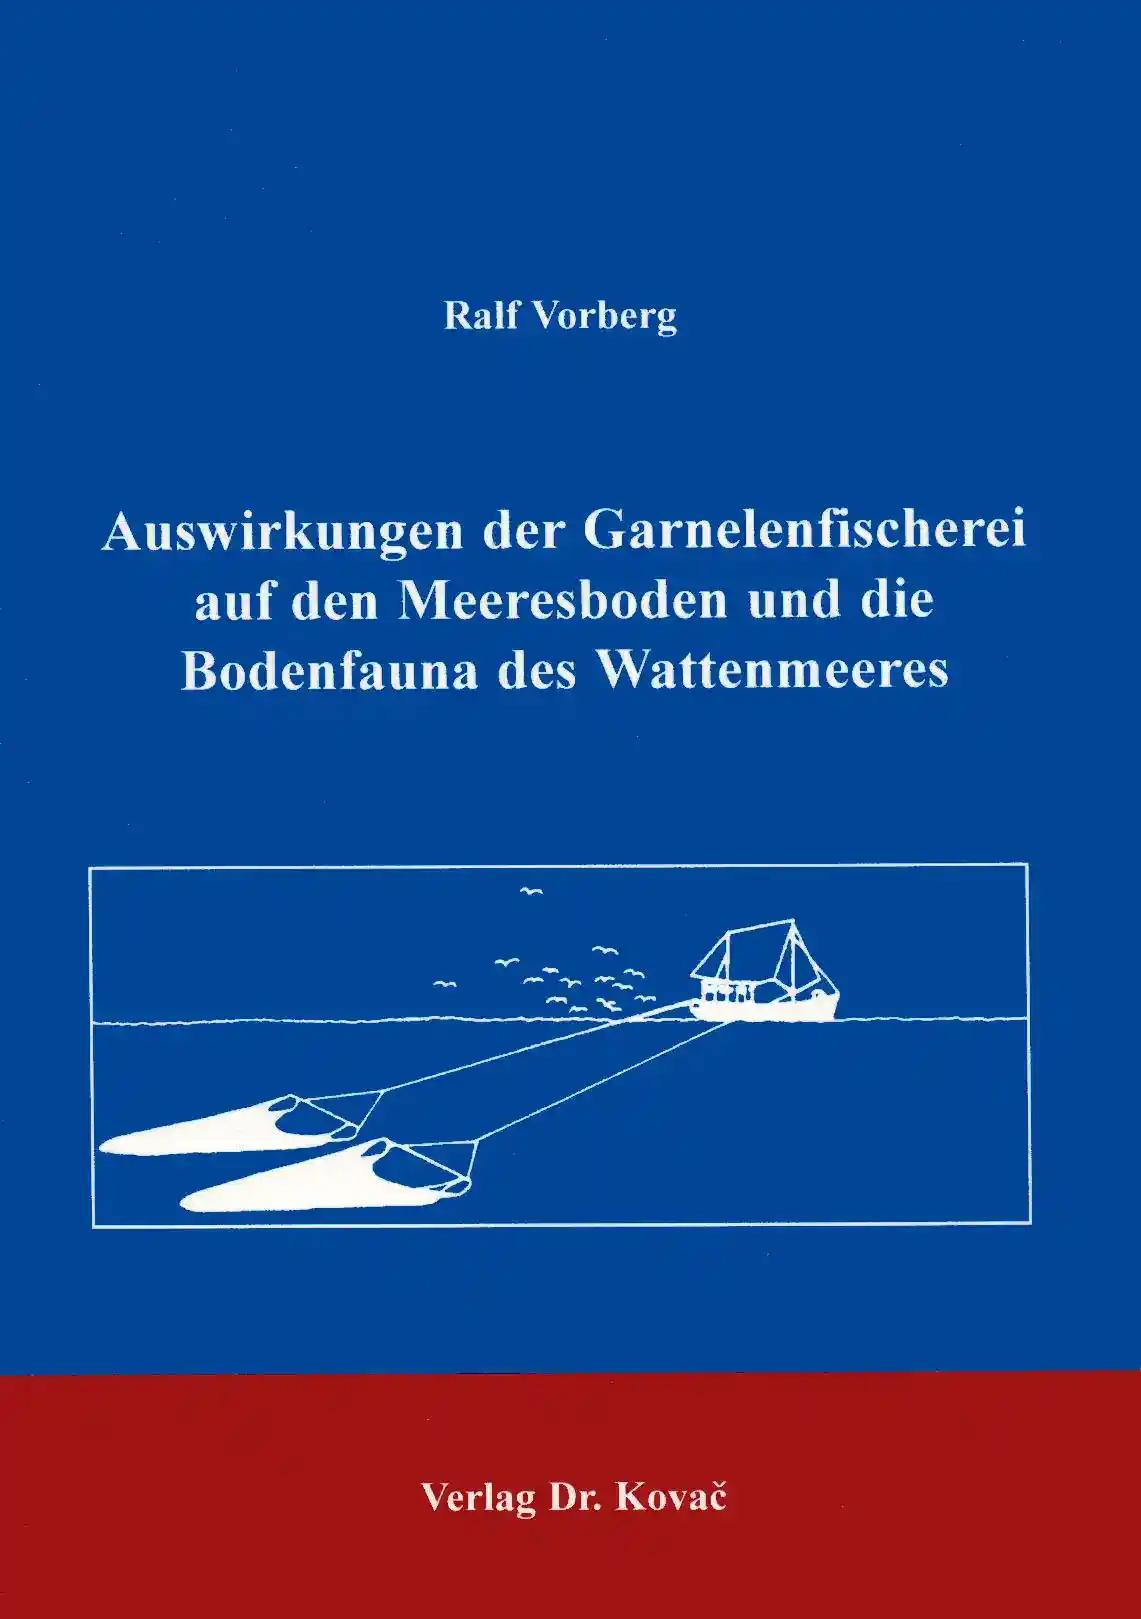 Auswirkungen der Garnelenfischerei auf den Meeresboden und Bodenfauna des Wattenmeeres . (Schriftenreihe Naturwissenschaftliche Forschungsergebnisse)